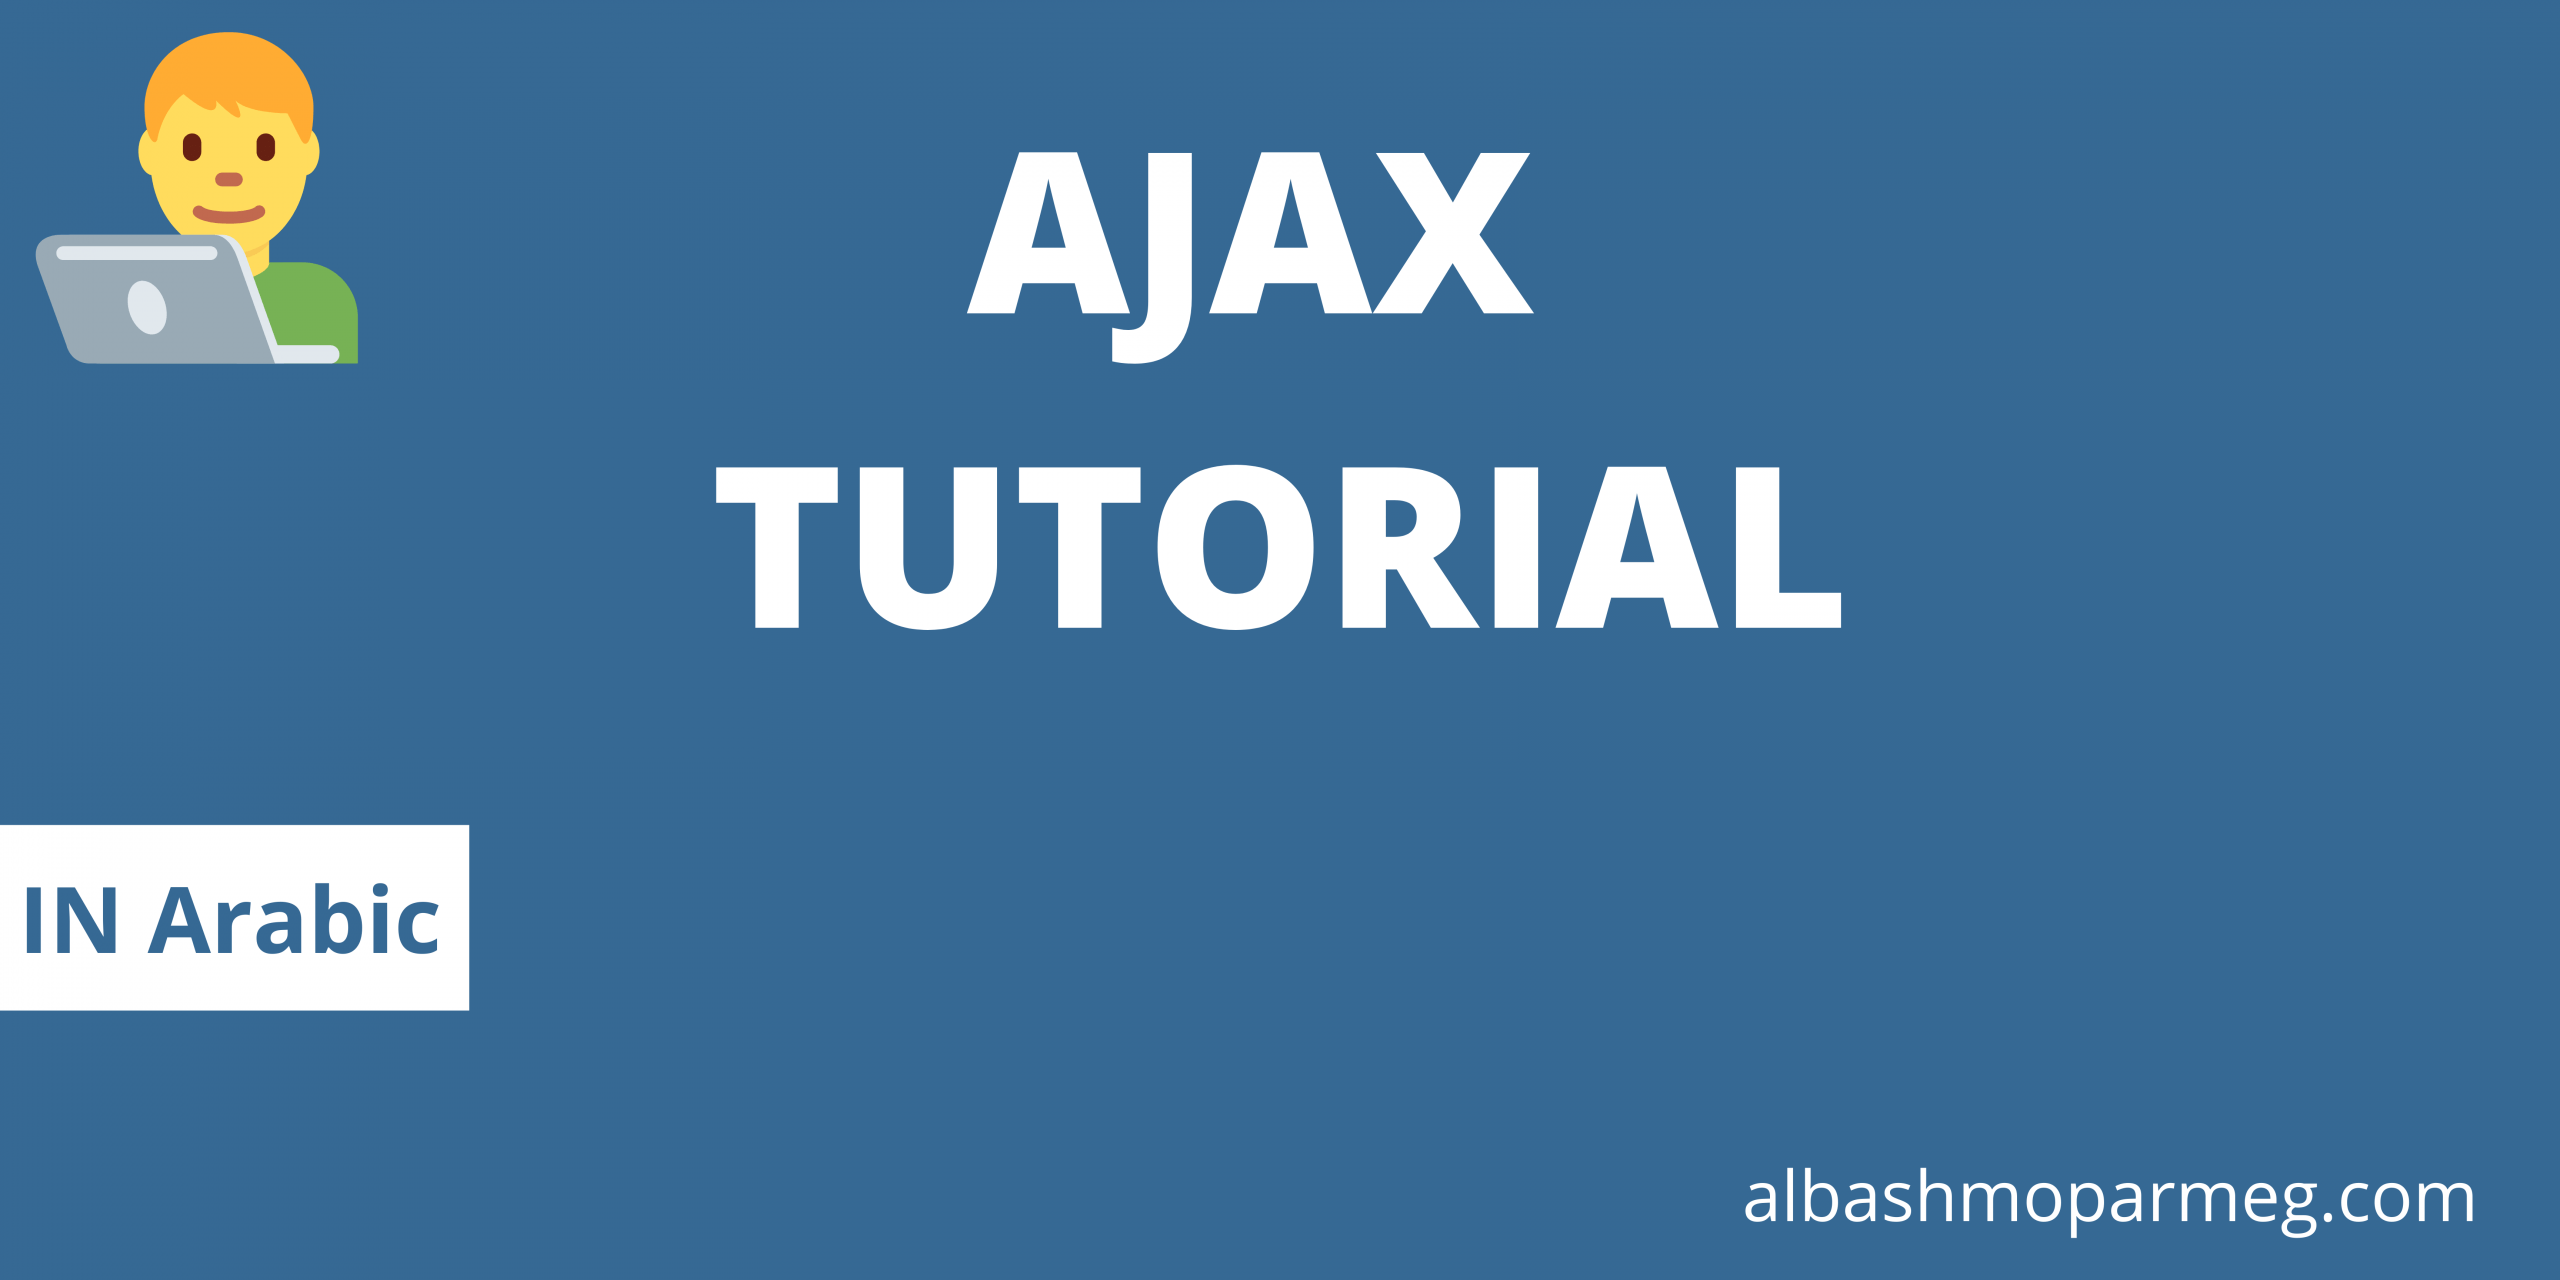 ajax tutorial - الباشمبرمج